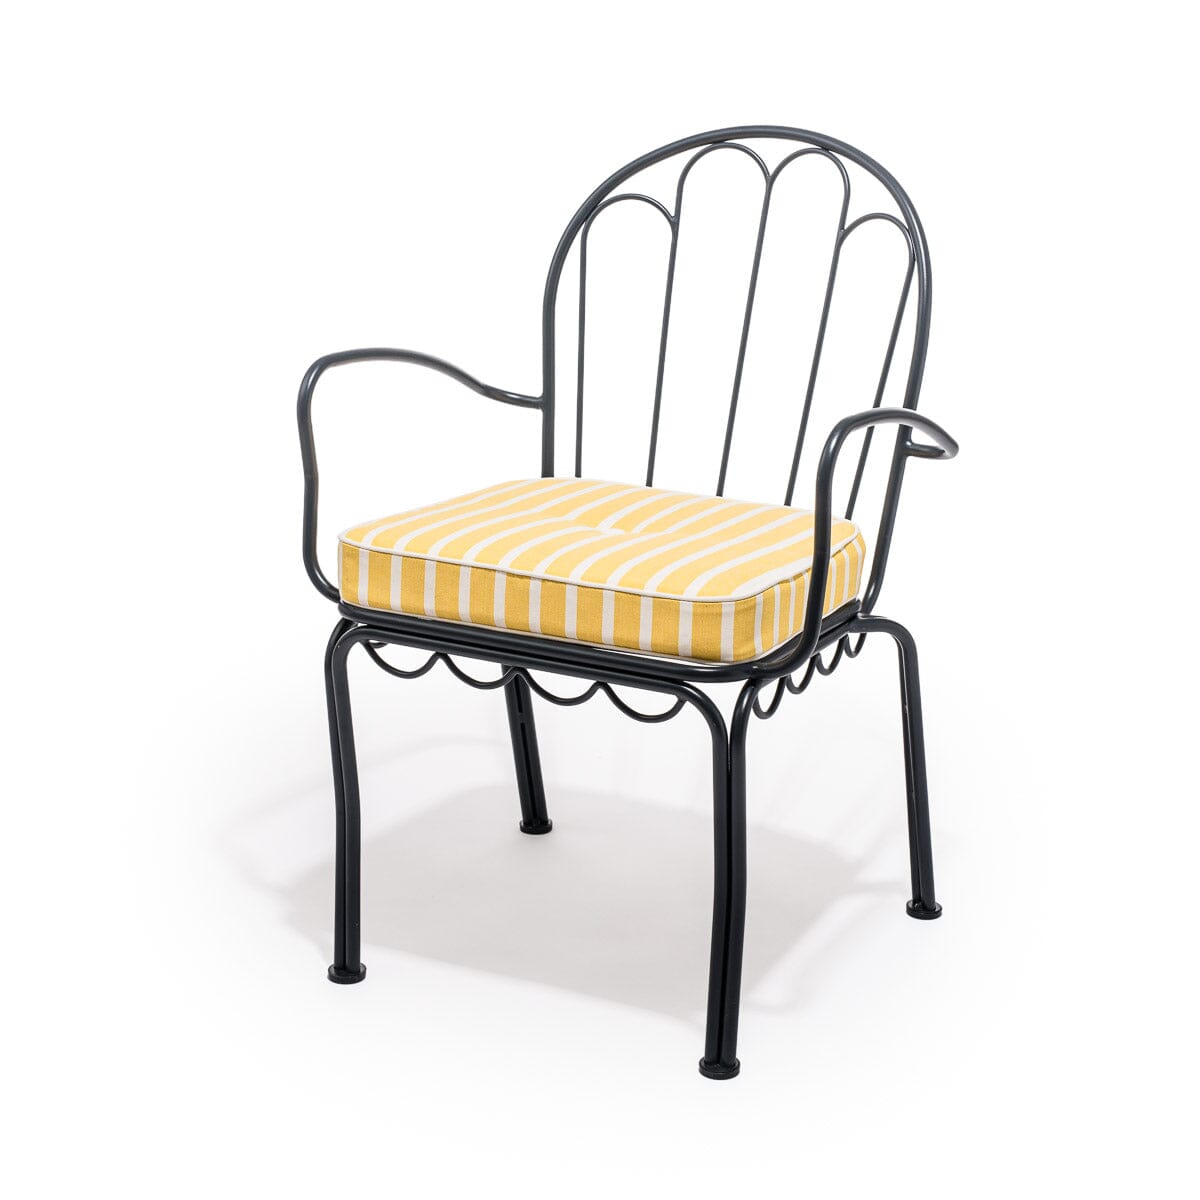 The Al Fresco Chair Cushion - Monaco Mimosa Stripe Al Fresco Chair Cushion Business & Pleasure Co 